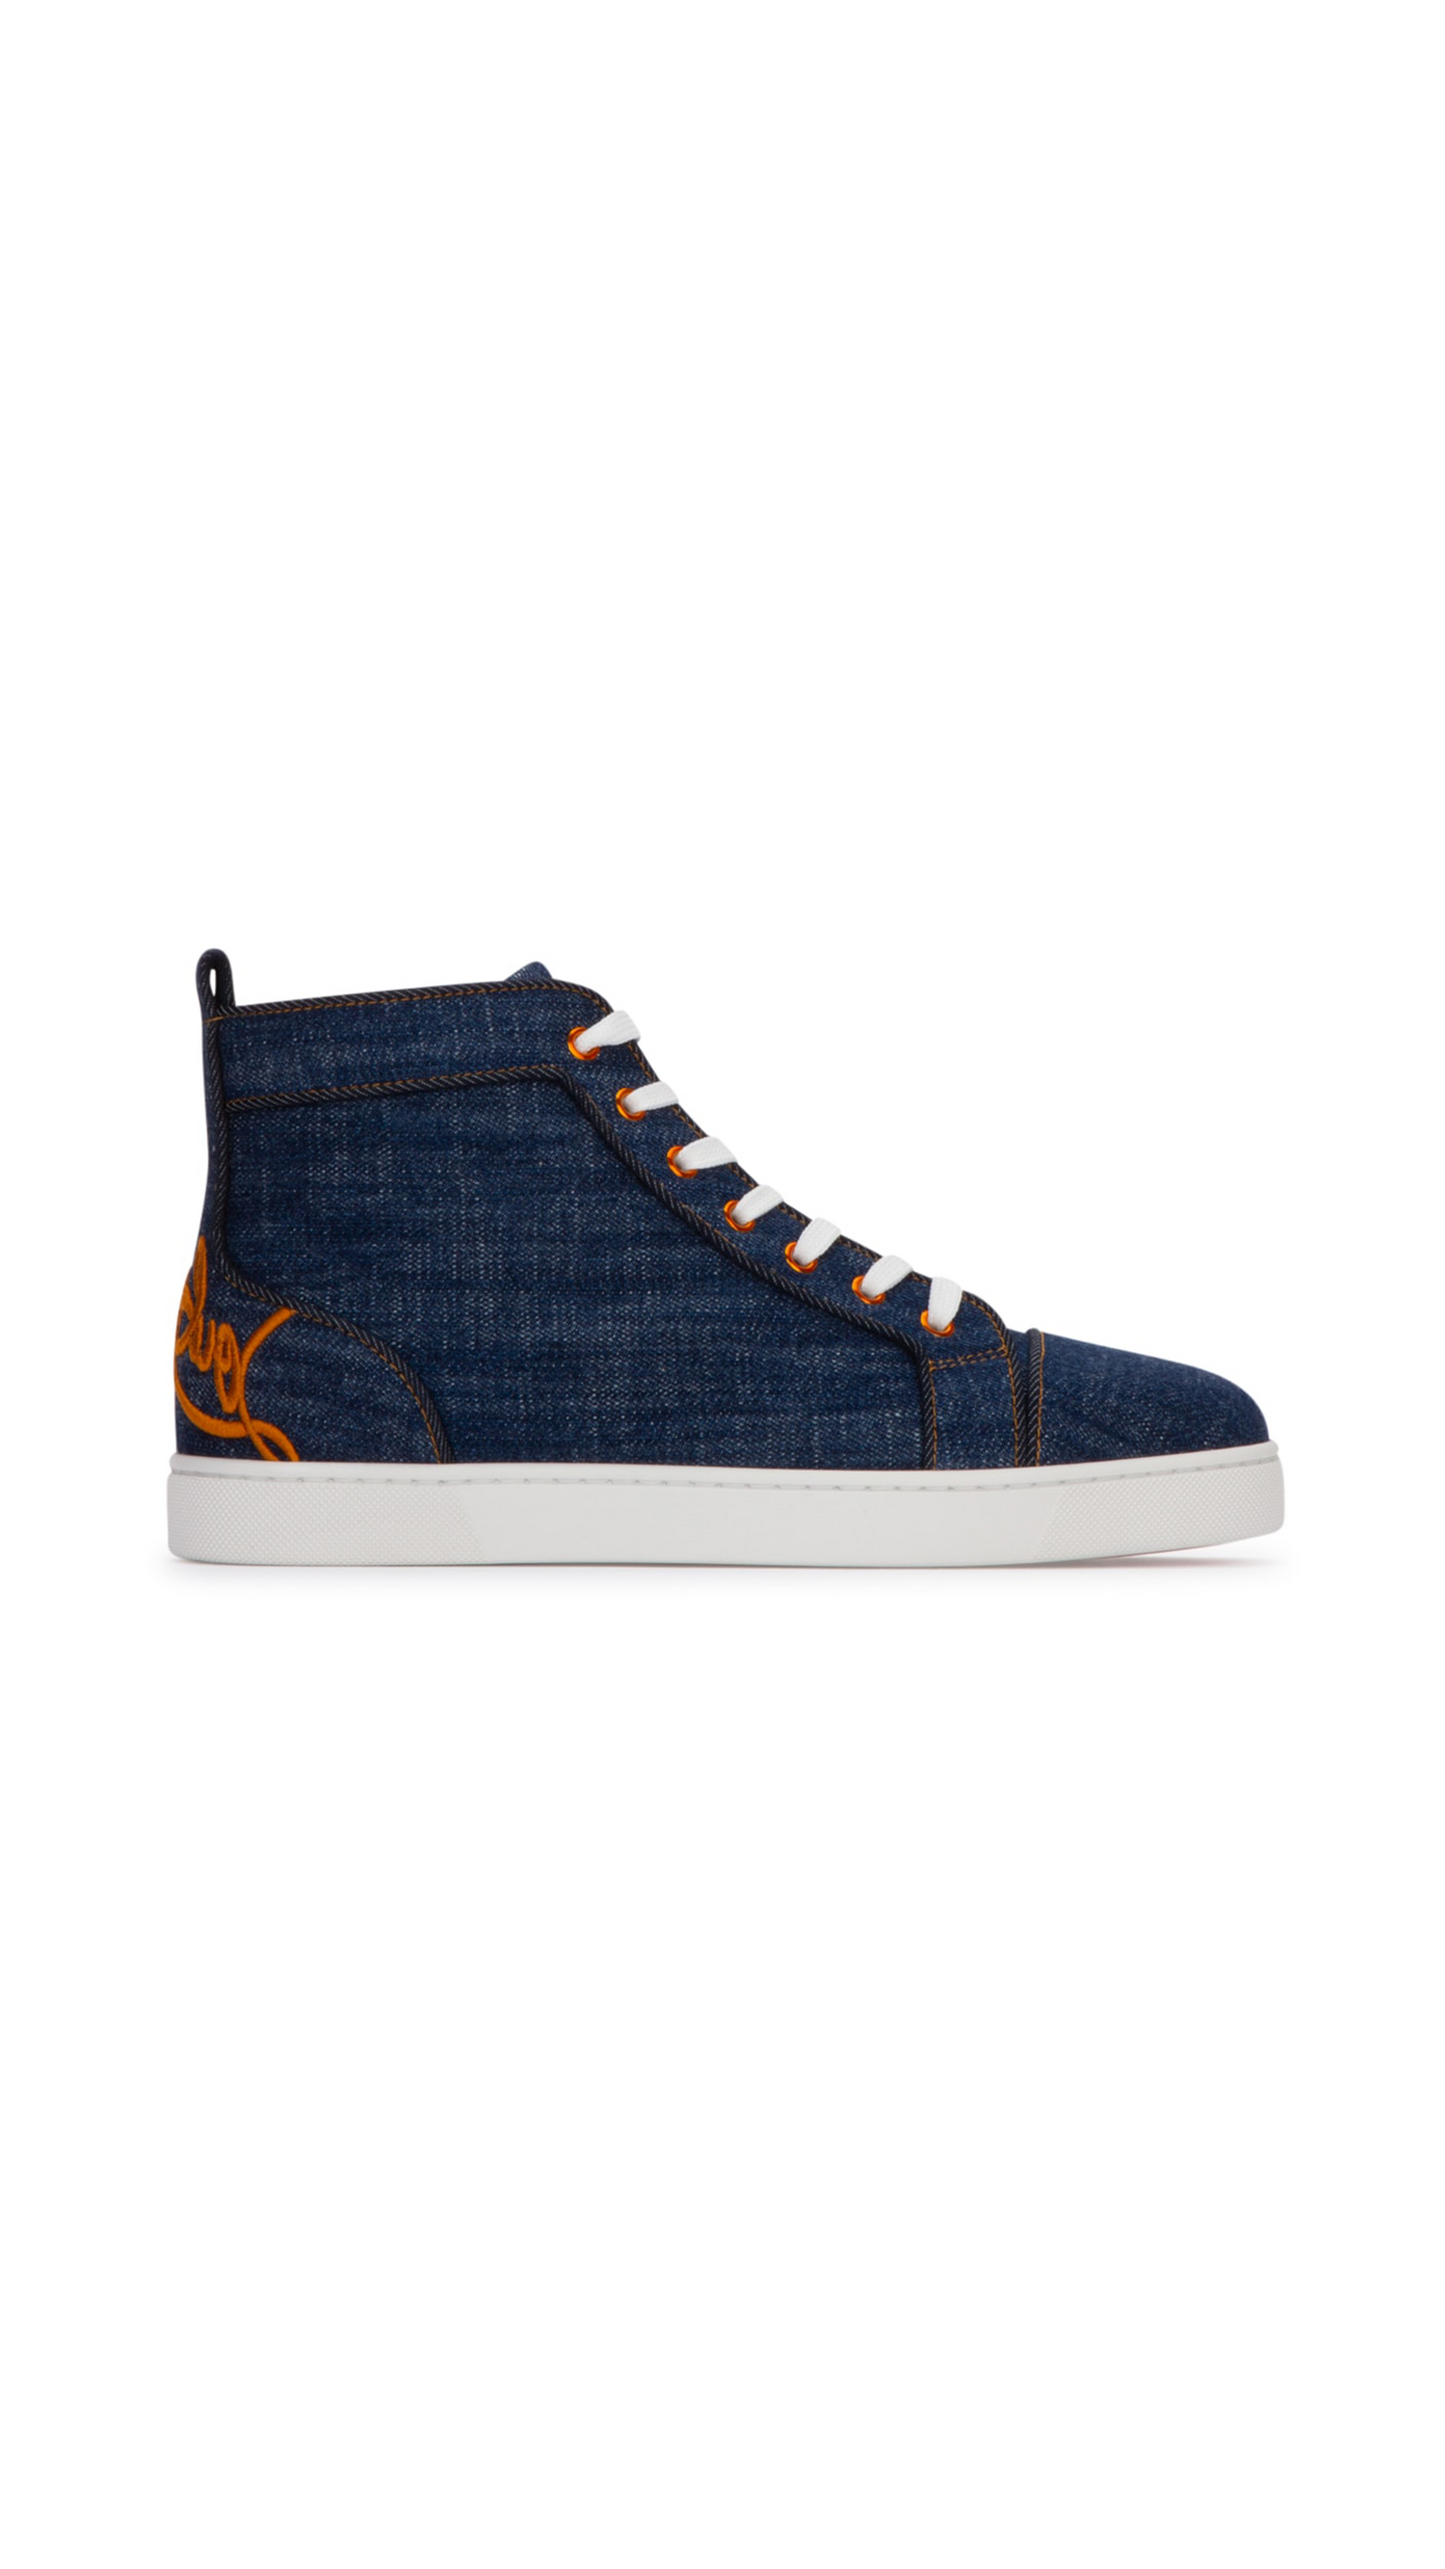 Louis Sneakers in Denim - Blue